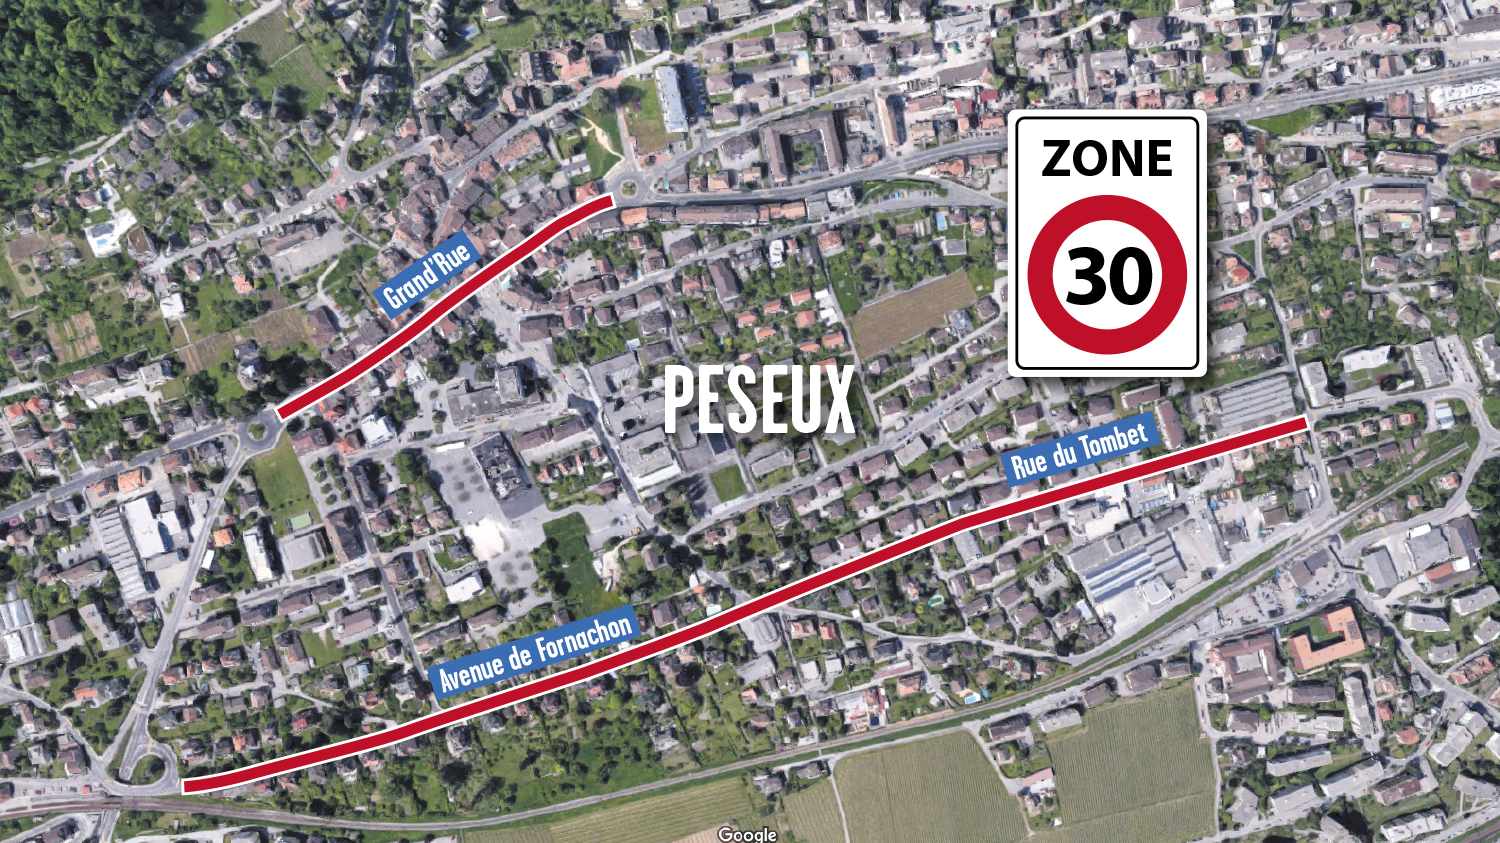 Les deux principaux axes traversant Peseux devraient être limités à 30 km/h.